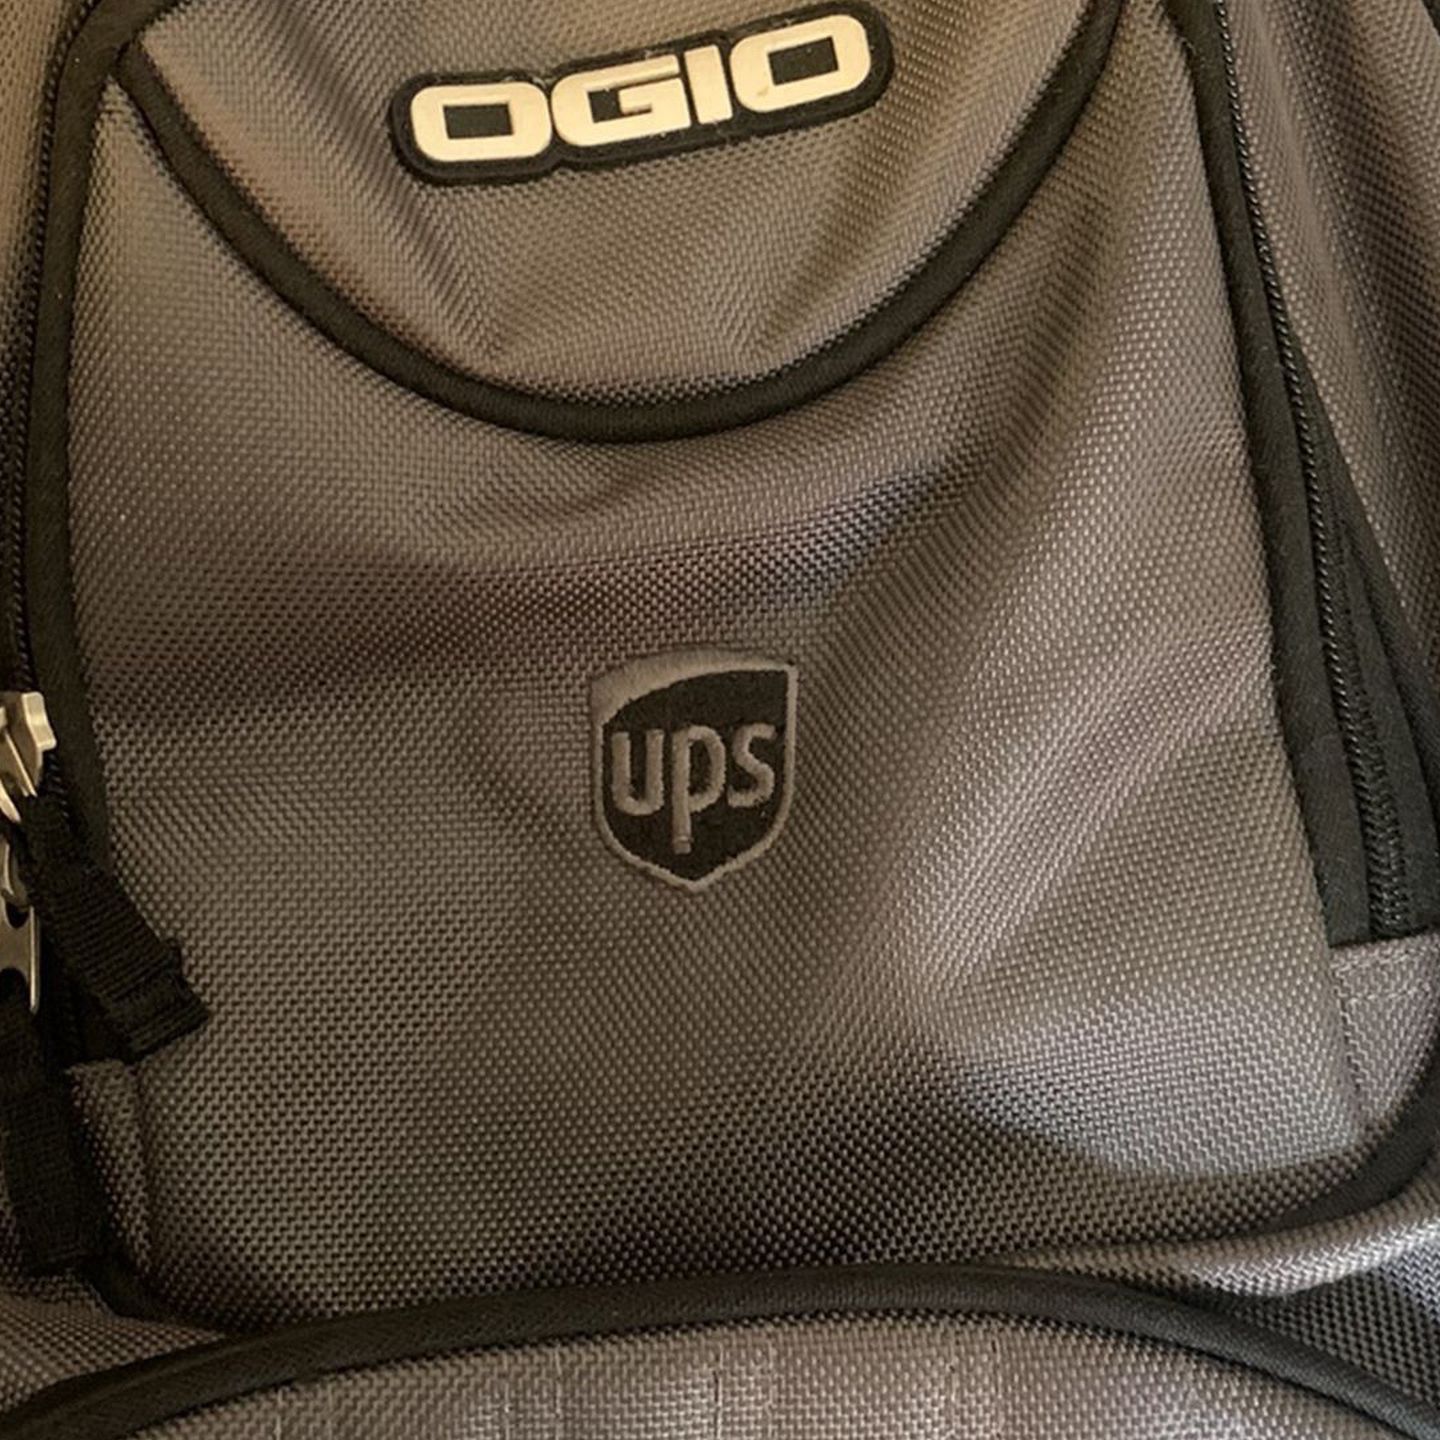 Brand New Ogio Ups Back Pack